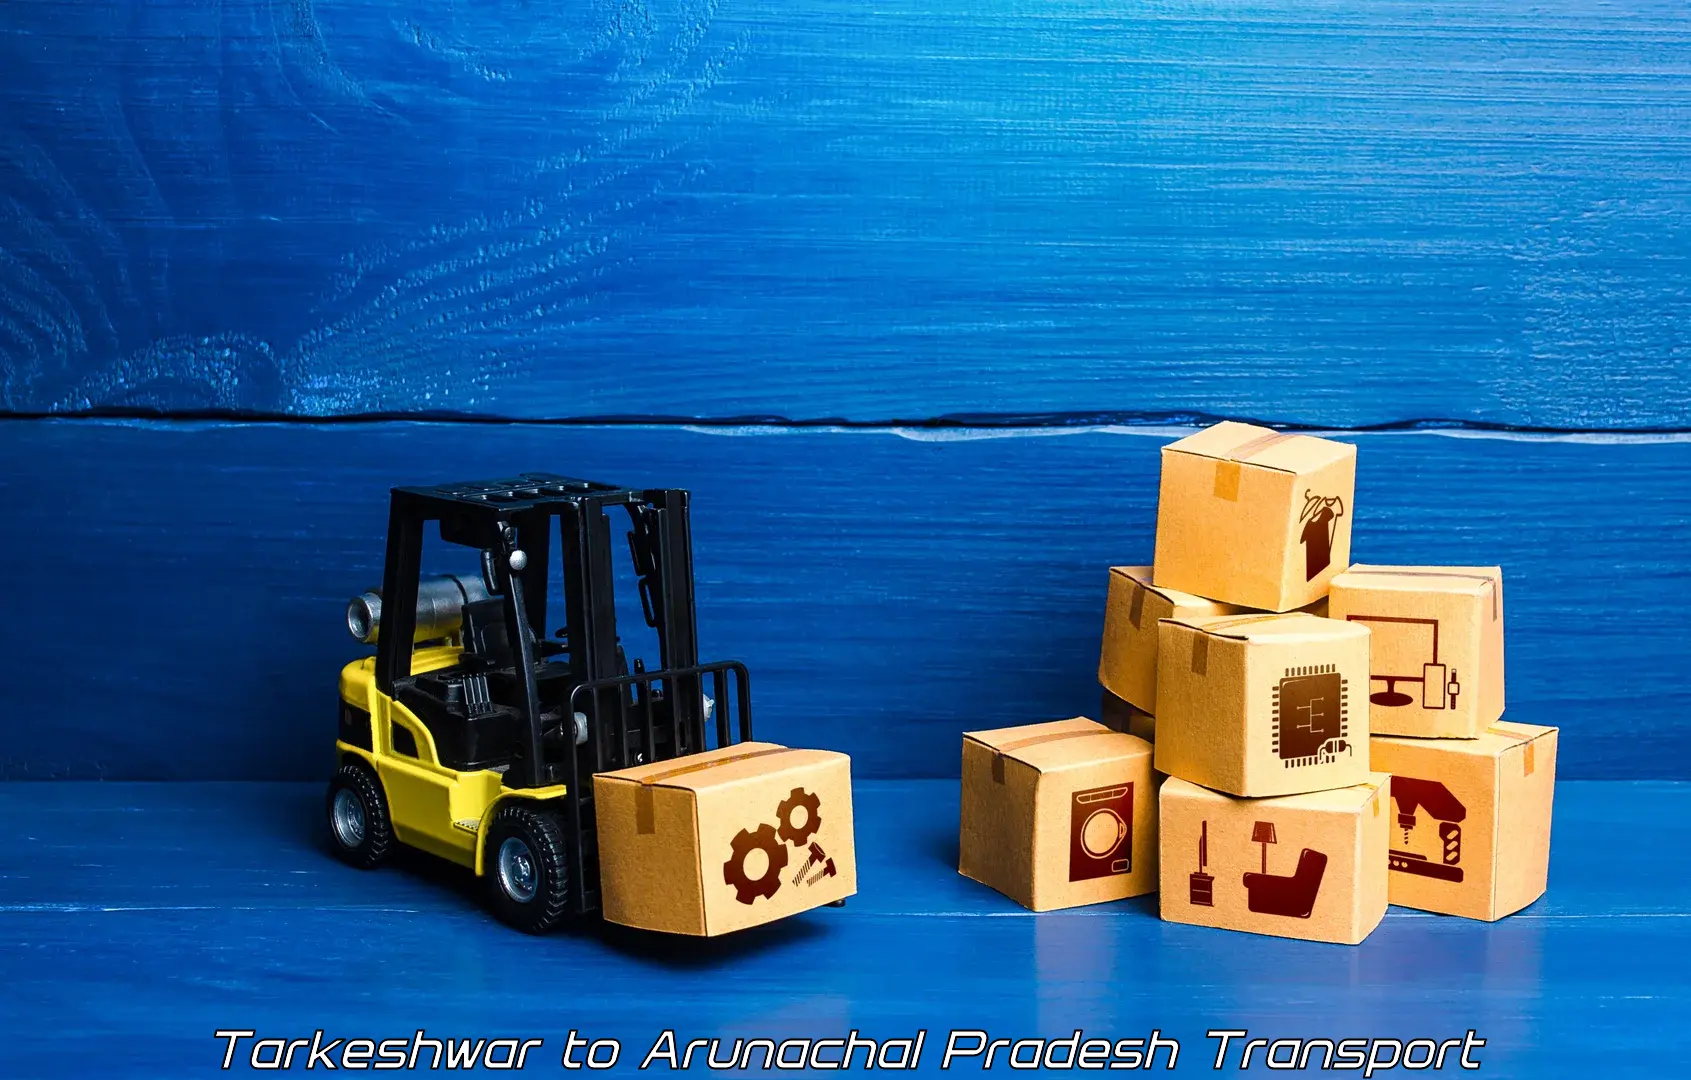 Pick up transport service Tarkeshwar to Arunachal Pradesh